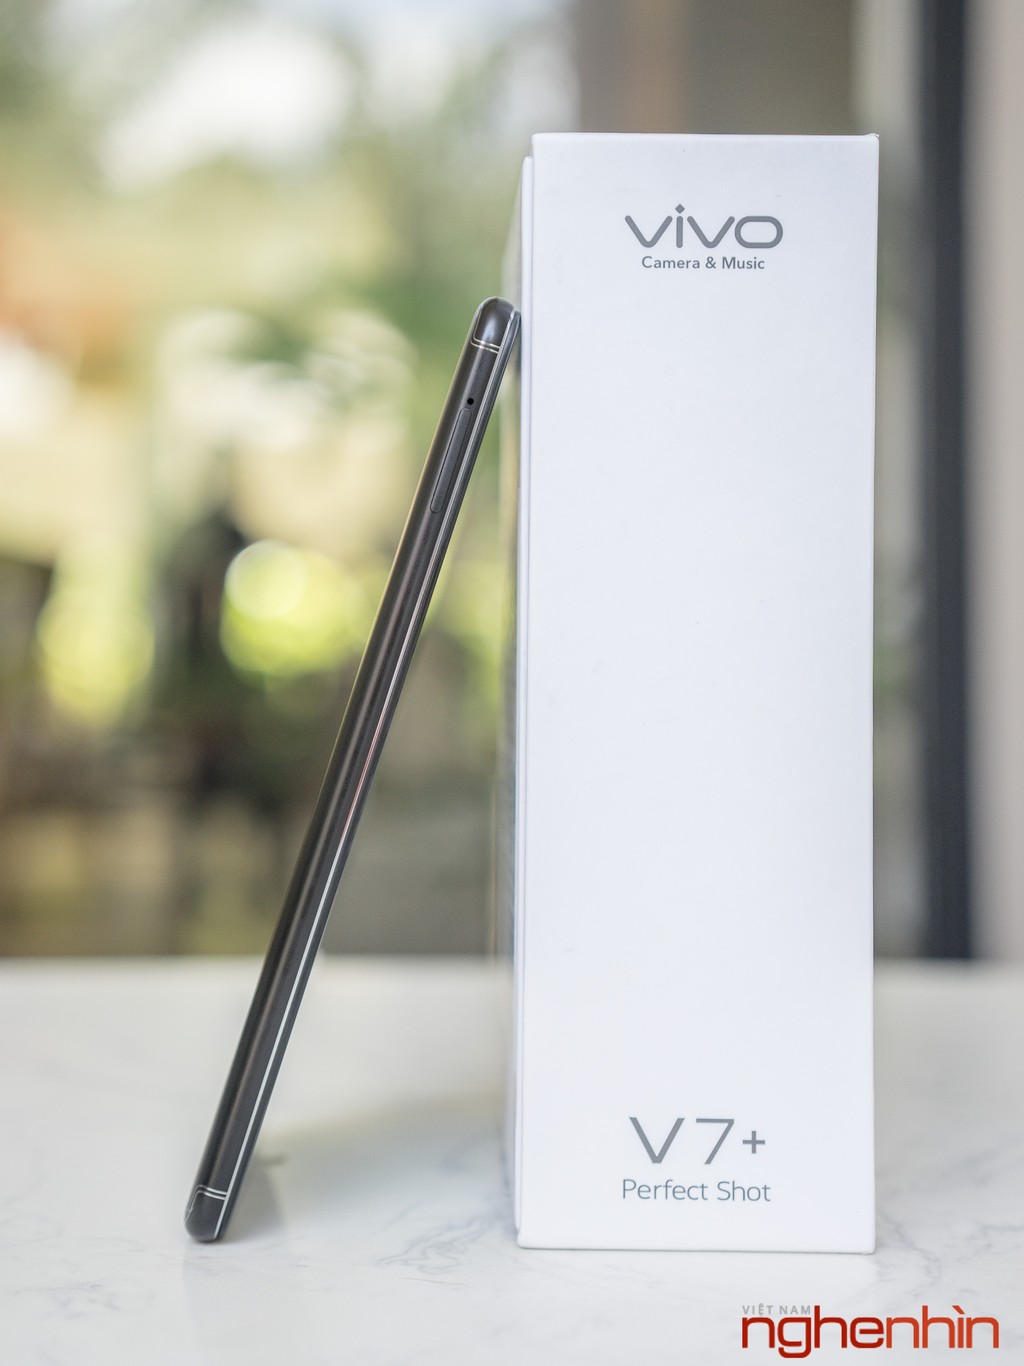 Mở hộp và đánh giá nhanh Vivo V7+: selfie đẹp, màn hình 18:9 ấn tượng ảnh 6